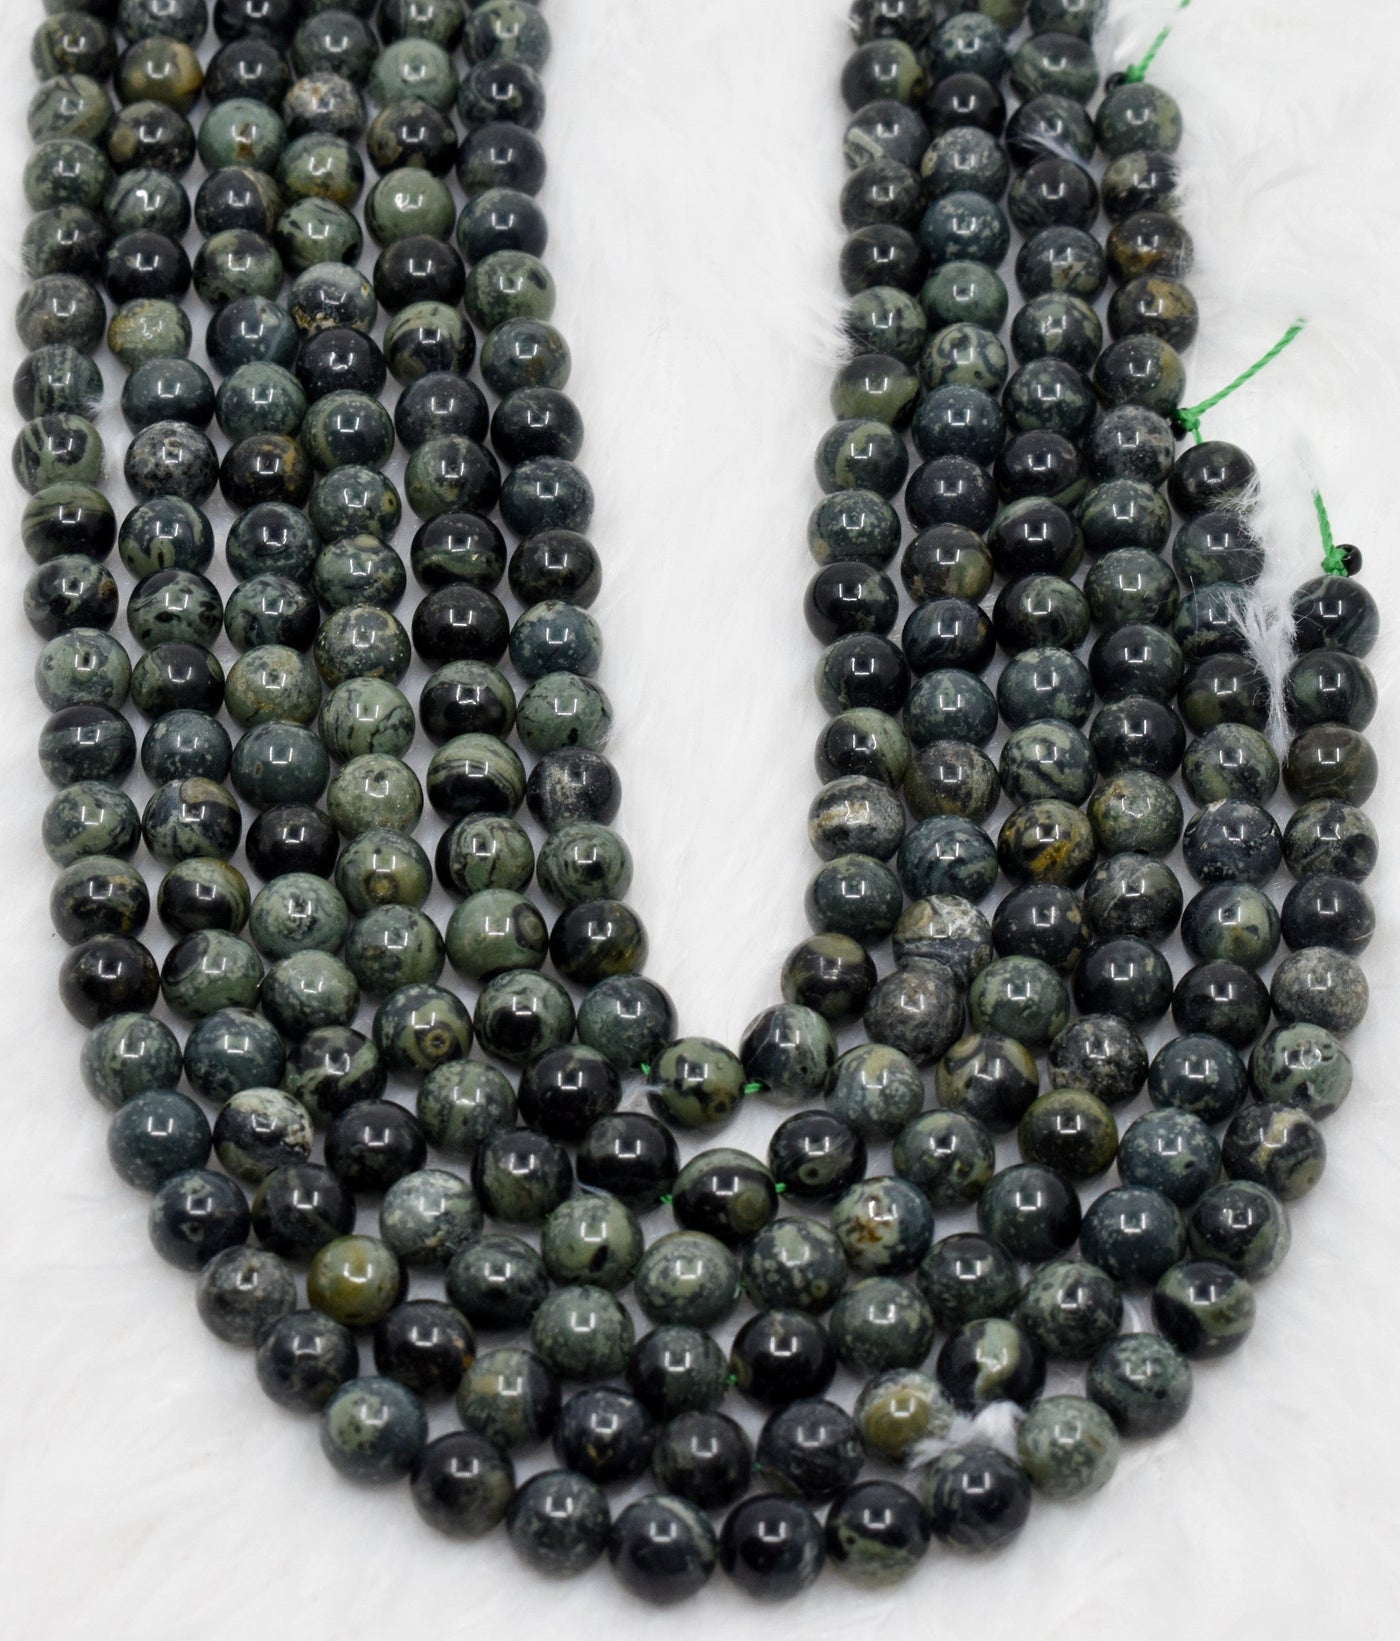 Kambaba Jasper Beads, Natural Round Crystal Beads 4mm to 10mm